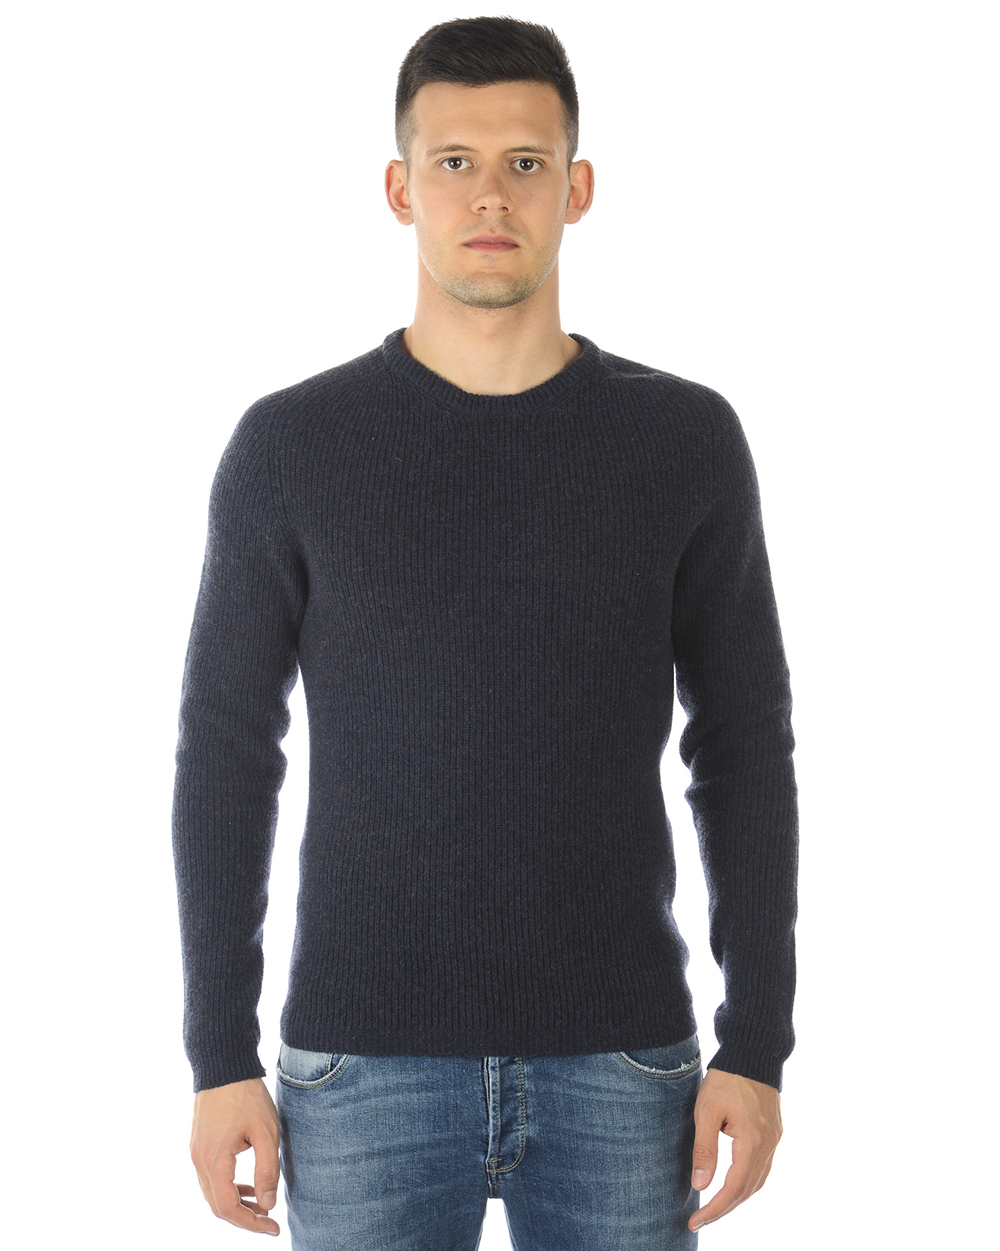 Maglia Maglione Armani Jeans Aj Sweater SLIM FIT ITALY Uomo Blu 06W32KH 35